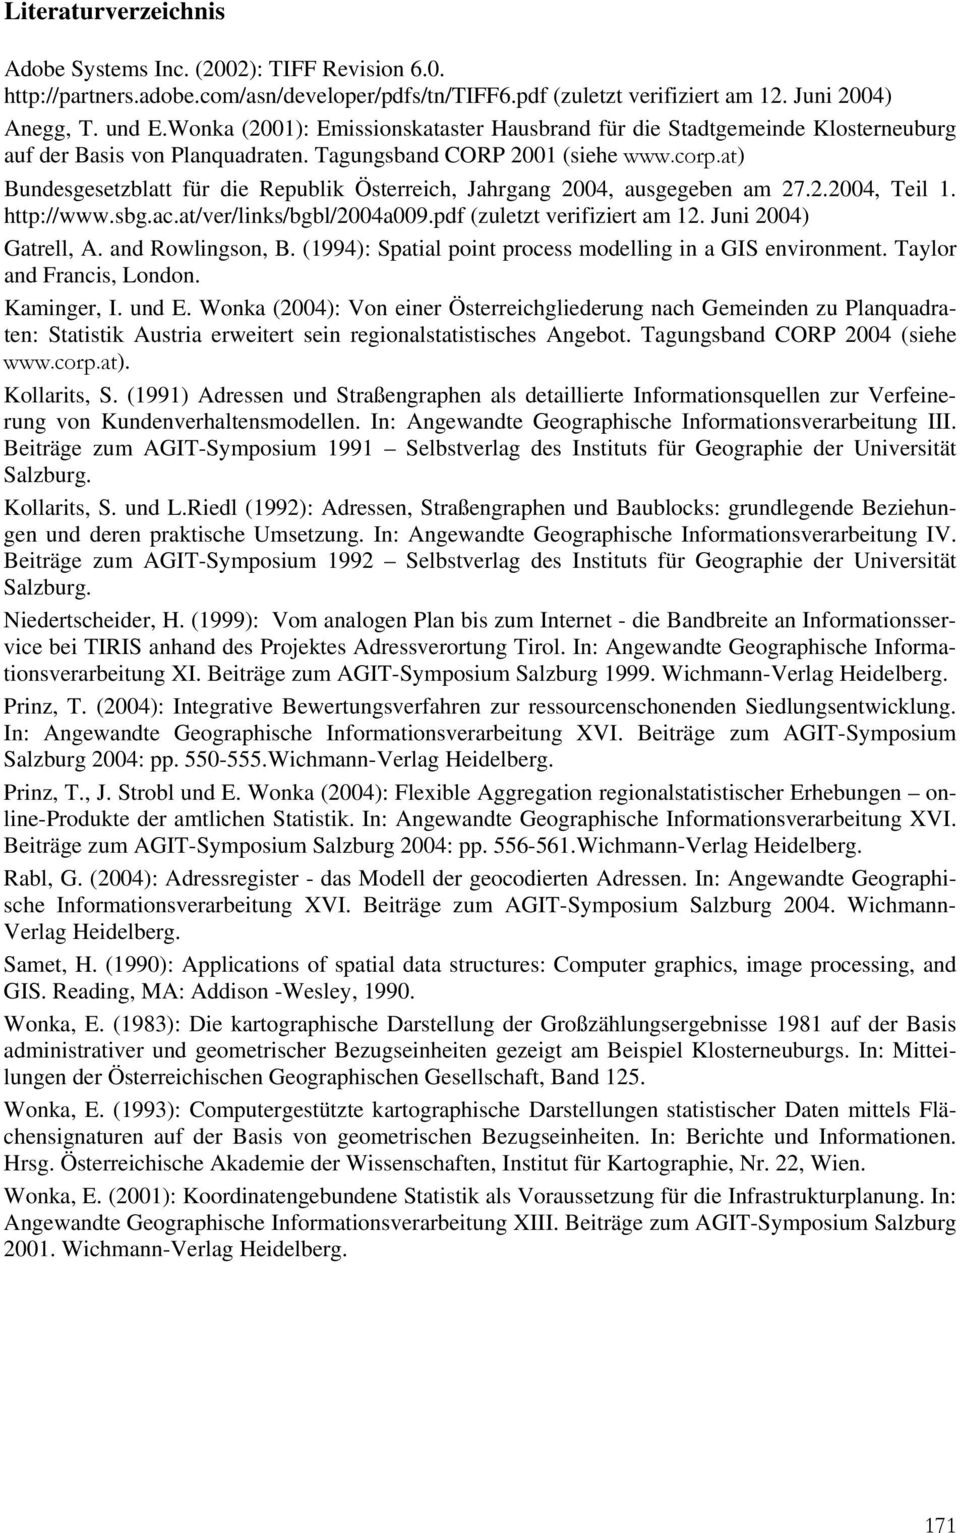 at) Bundesgesetzblatt für die Republik Österreich, Jahrgang 2004, ausgegeben am 27.2.2004, Teil 1. http://www.sbg.ac.at/ver/links/bgbl/2004a009.pdf (zuletzt verifiziert am 12. Juni 2004) Gatrell, A.